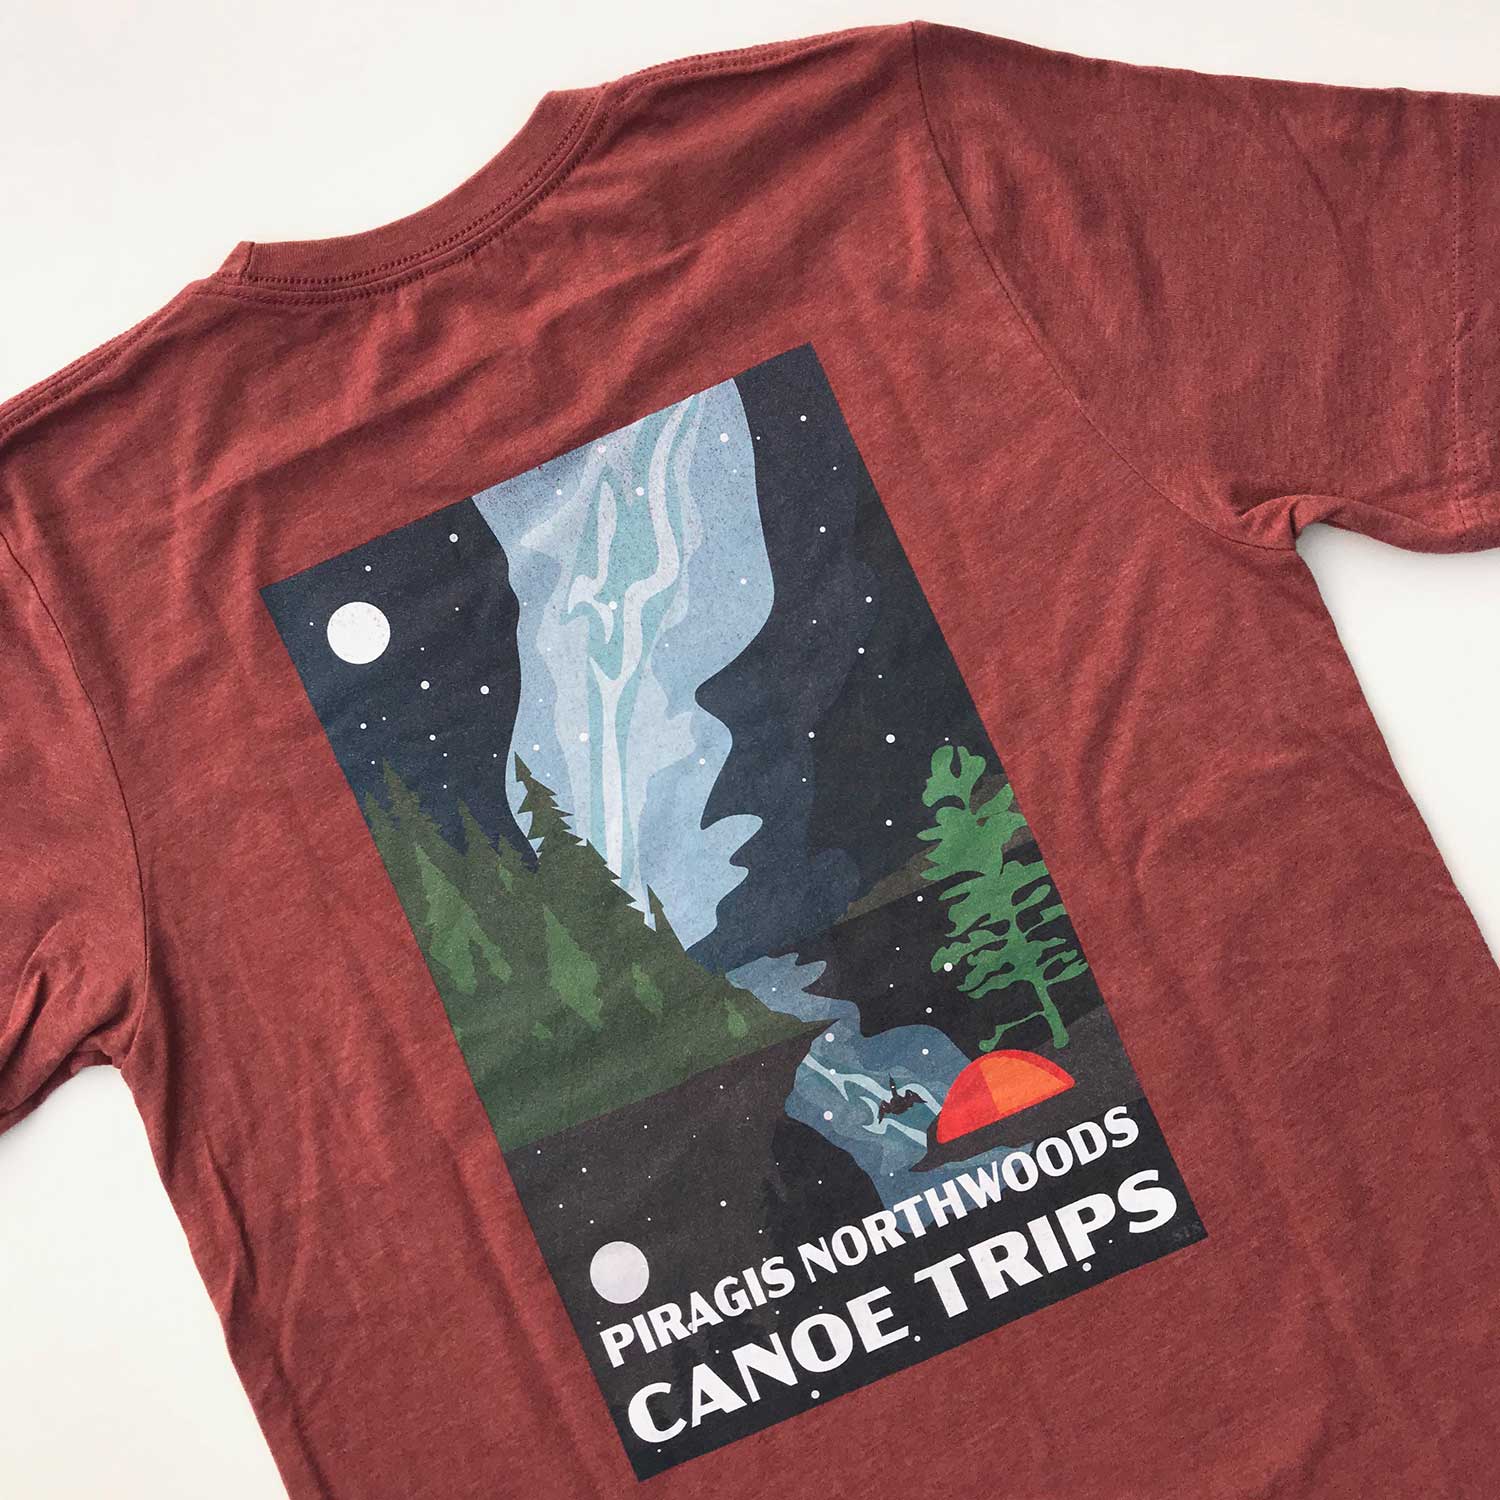 Night Sky Scene Piragis Tee Shirt | Boundary Waters Catalog